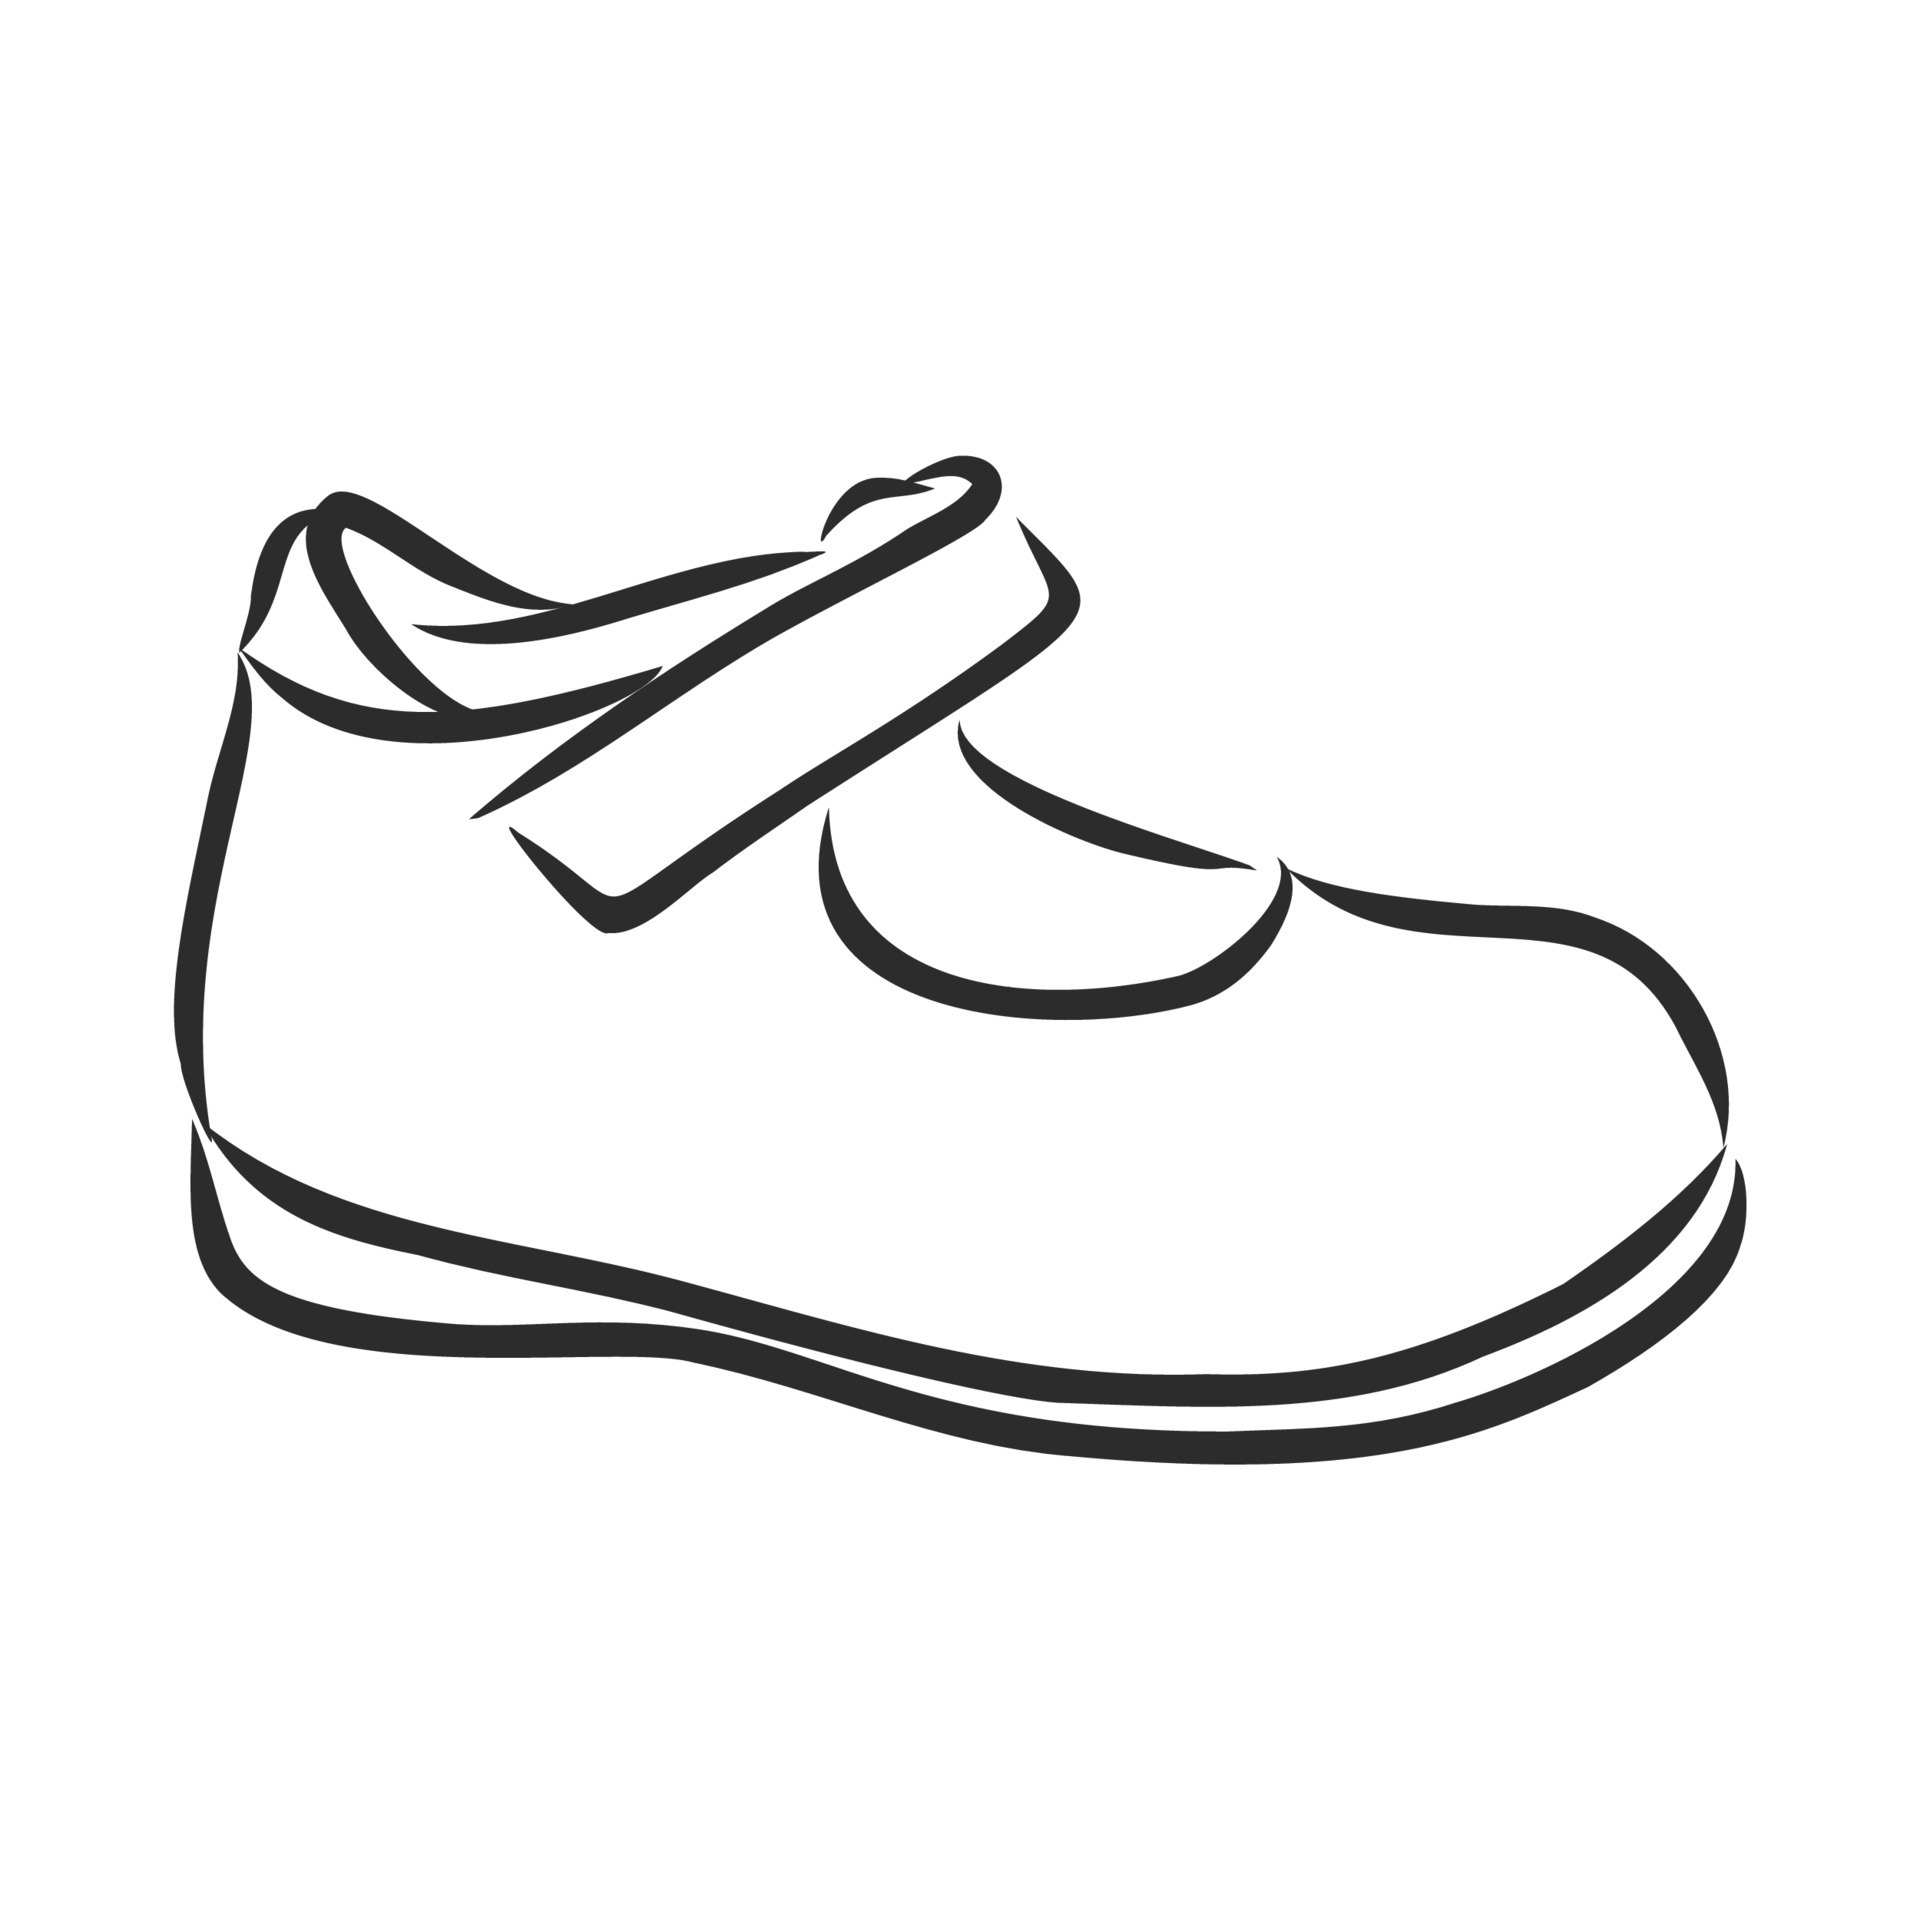 children's shoes vector sketch 11094763 Vector Art at Vecteezy